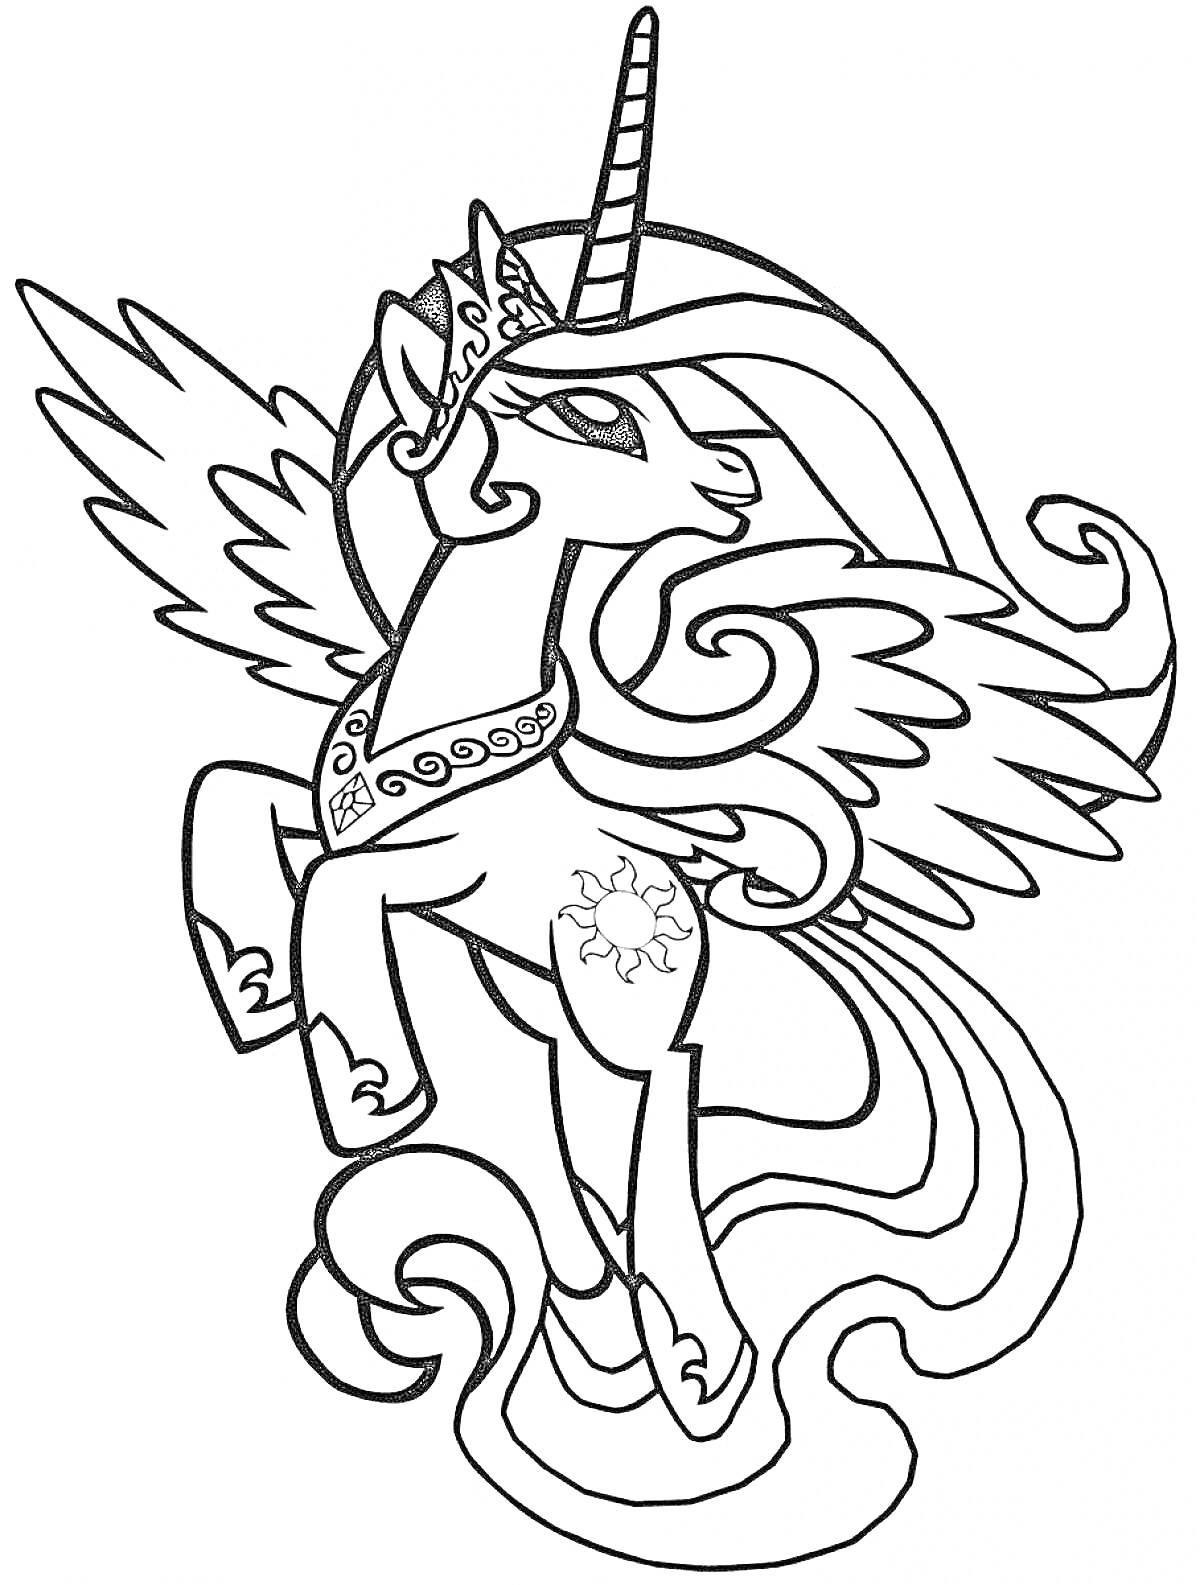 Раскраска Пони Селестия с короной, рогом, крыльями и гривающими волосами